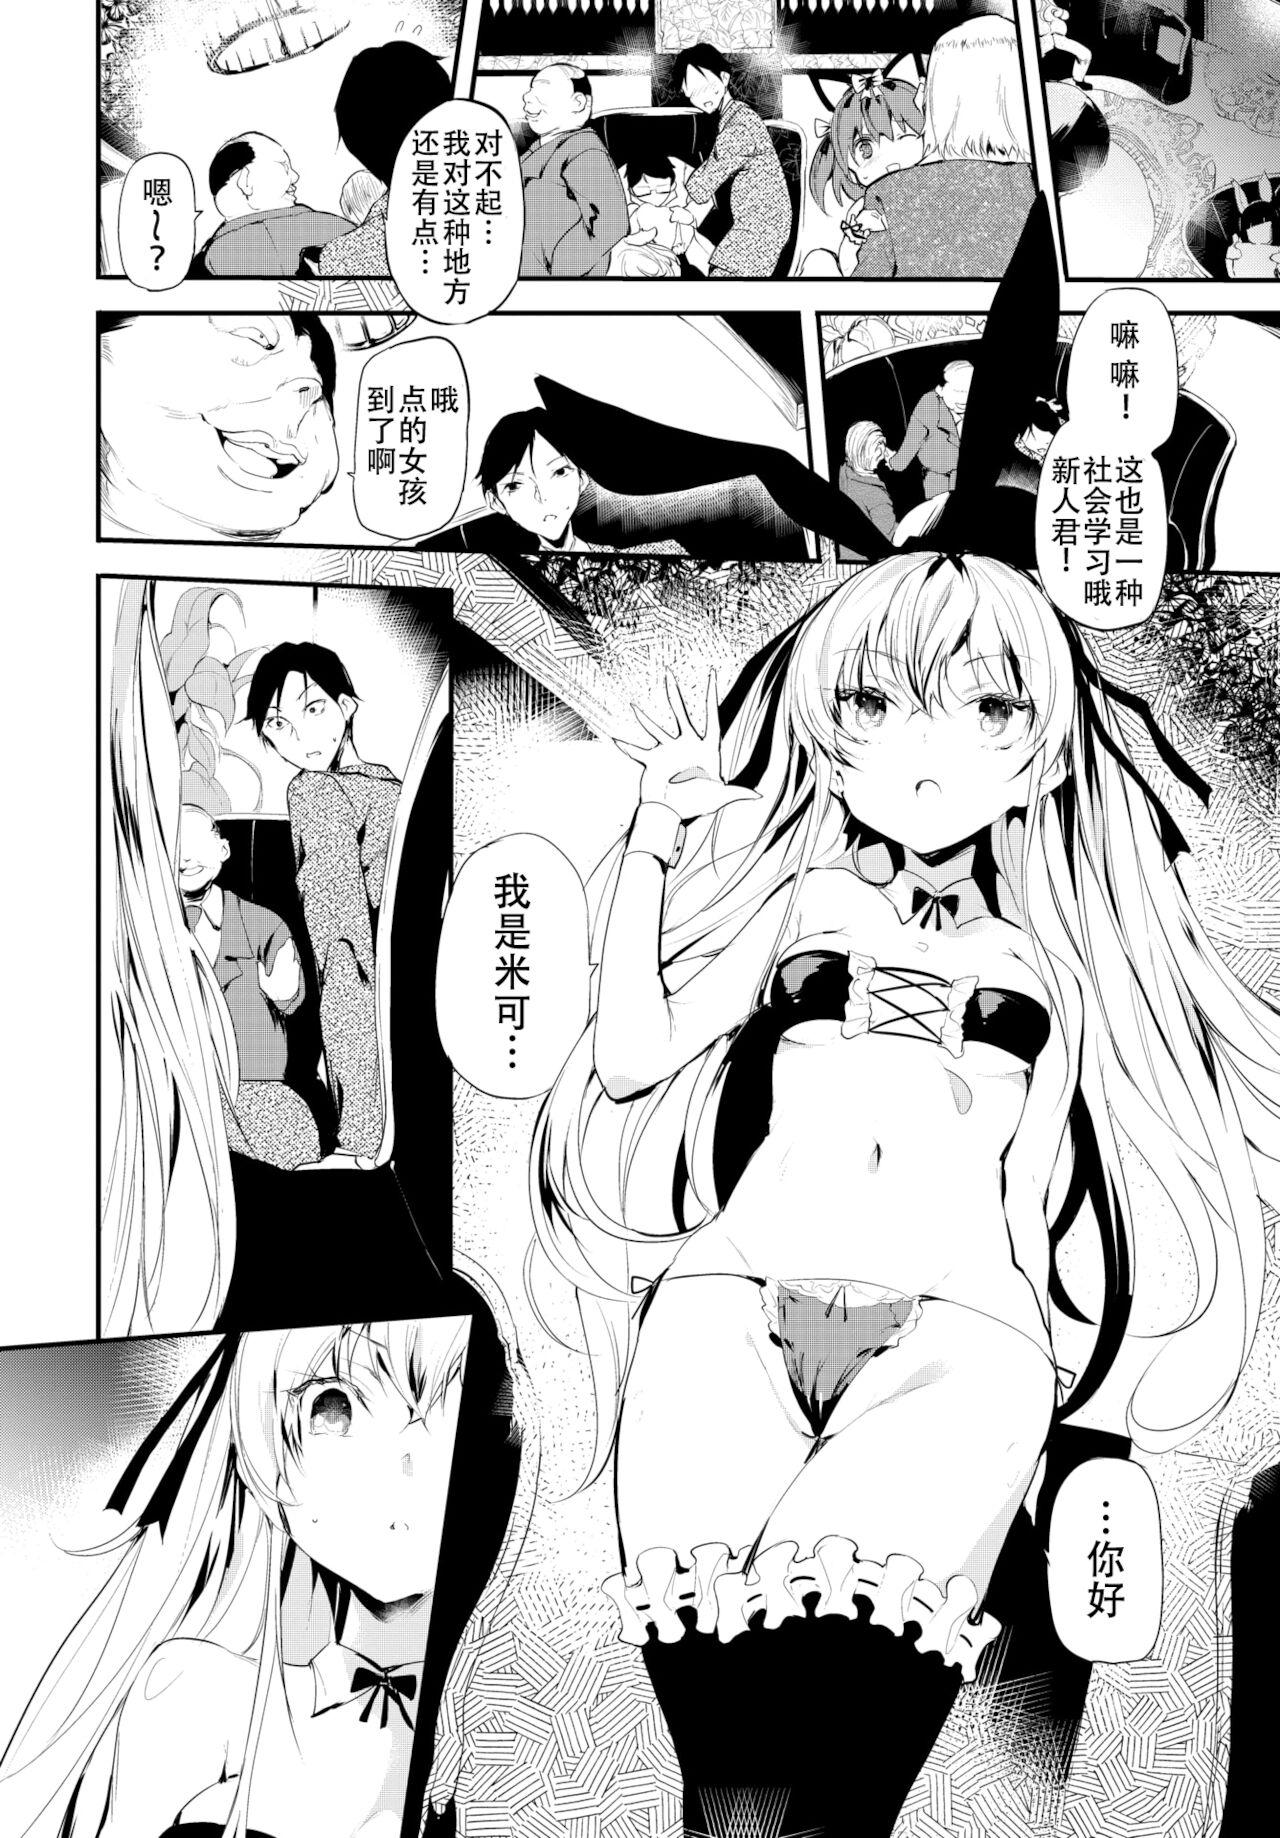 Star Reitaisai 10 Repo Manga Butthole - Page 8